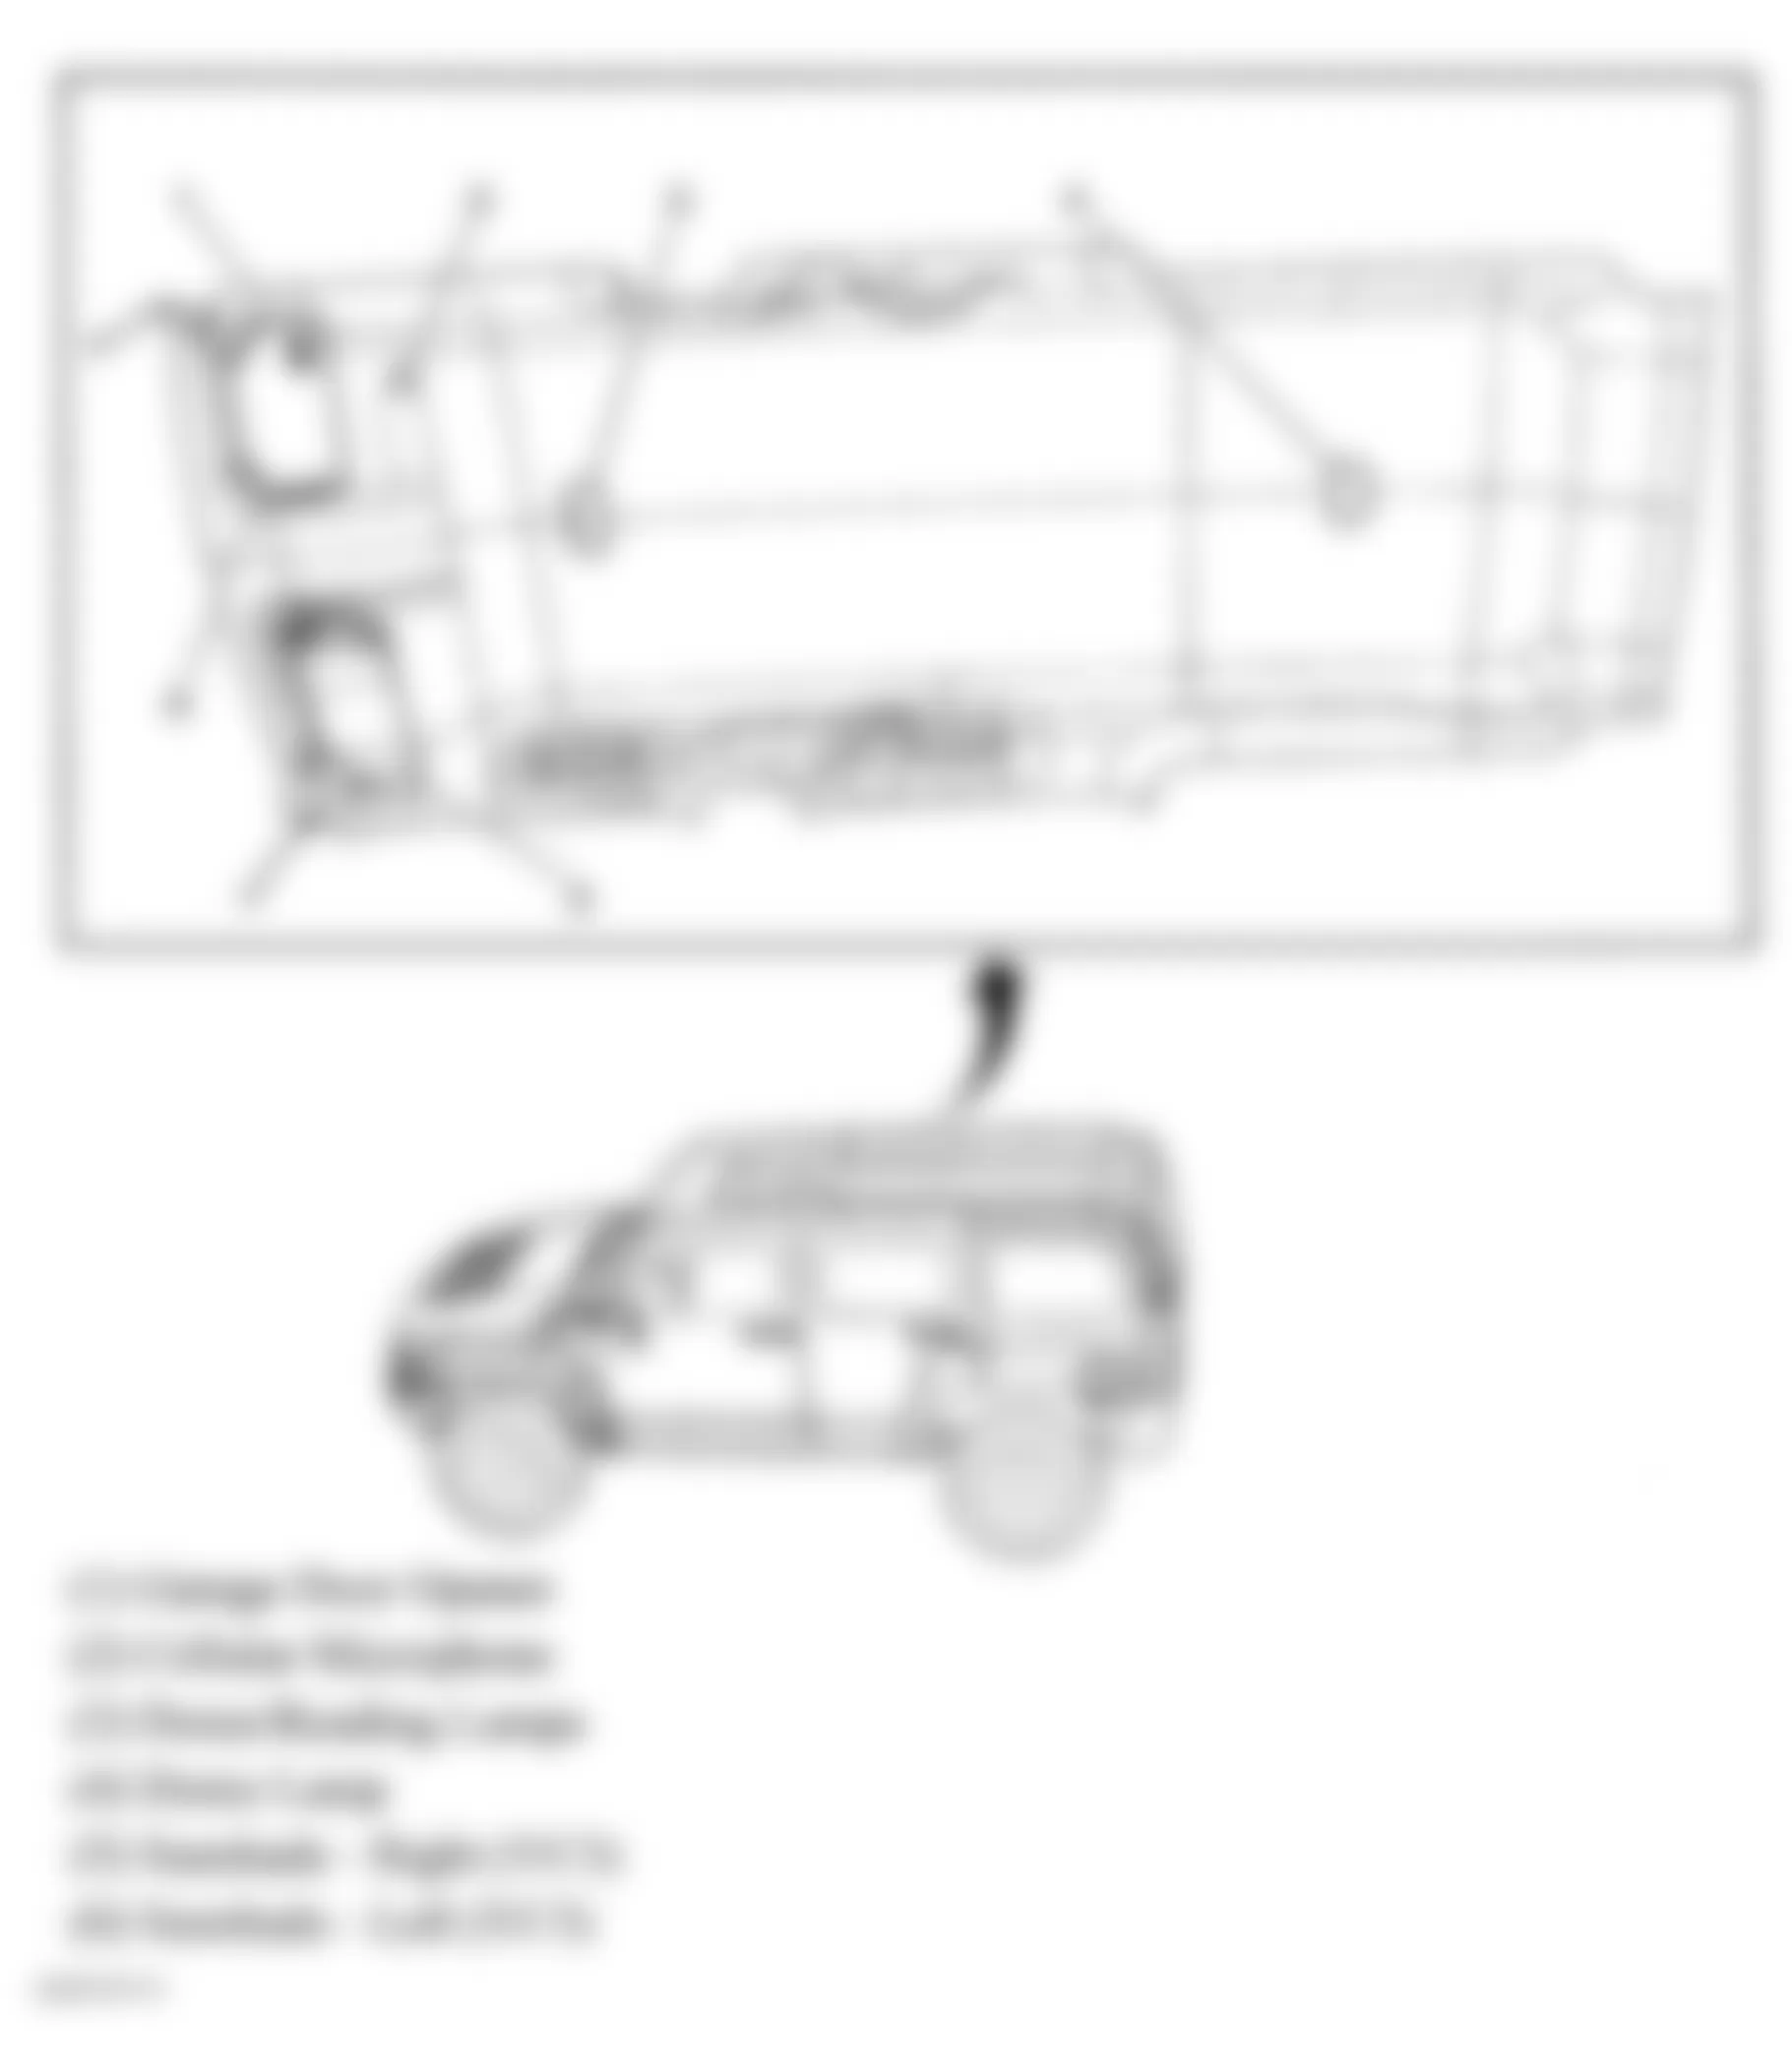 Hummer H3T Alpha 2009 - Component Locations -  Headliner Components